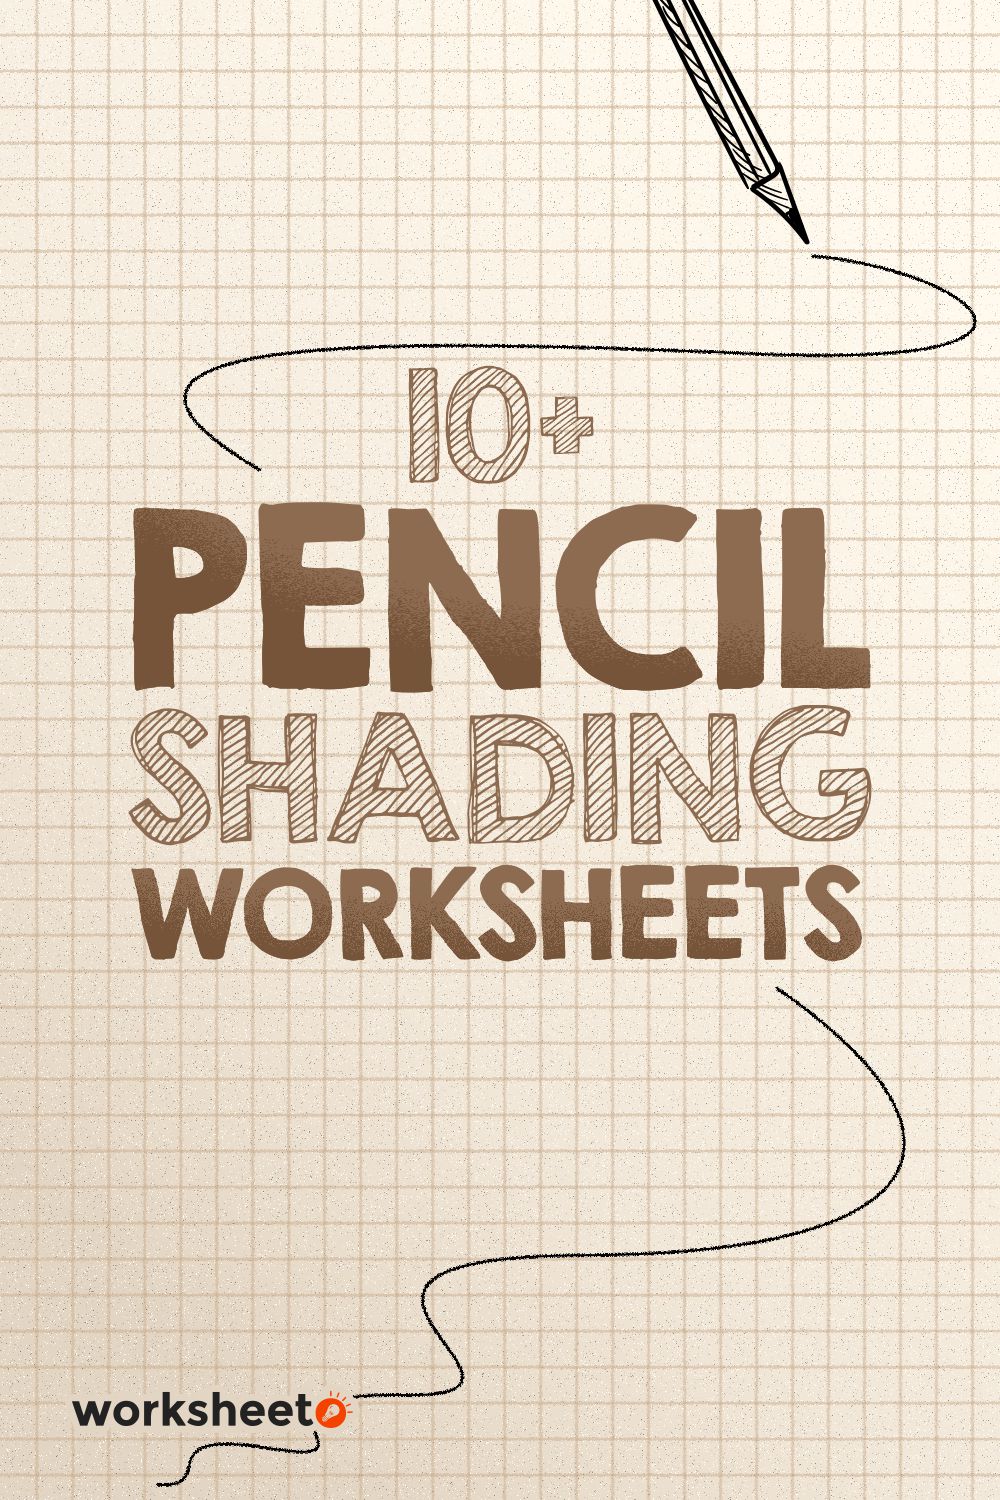 Pencil Shading Worksheets